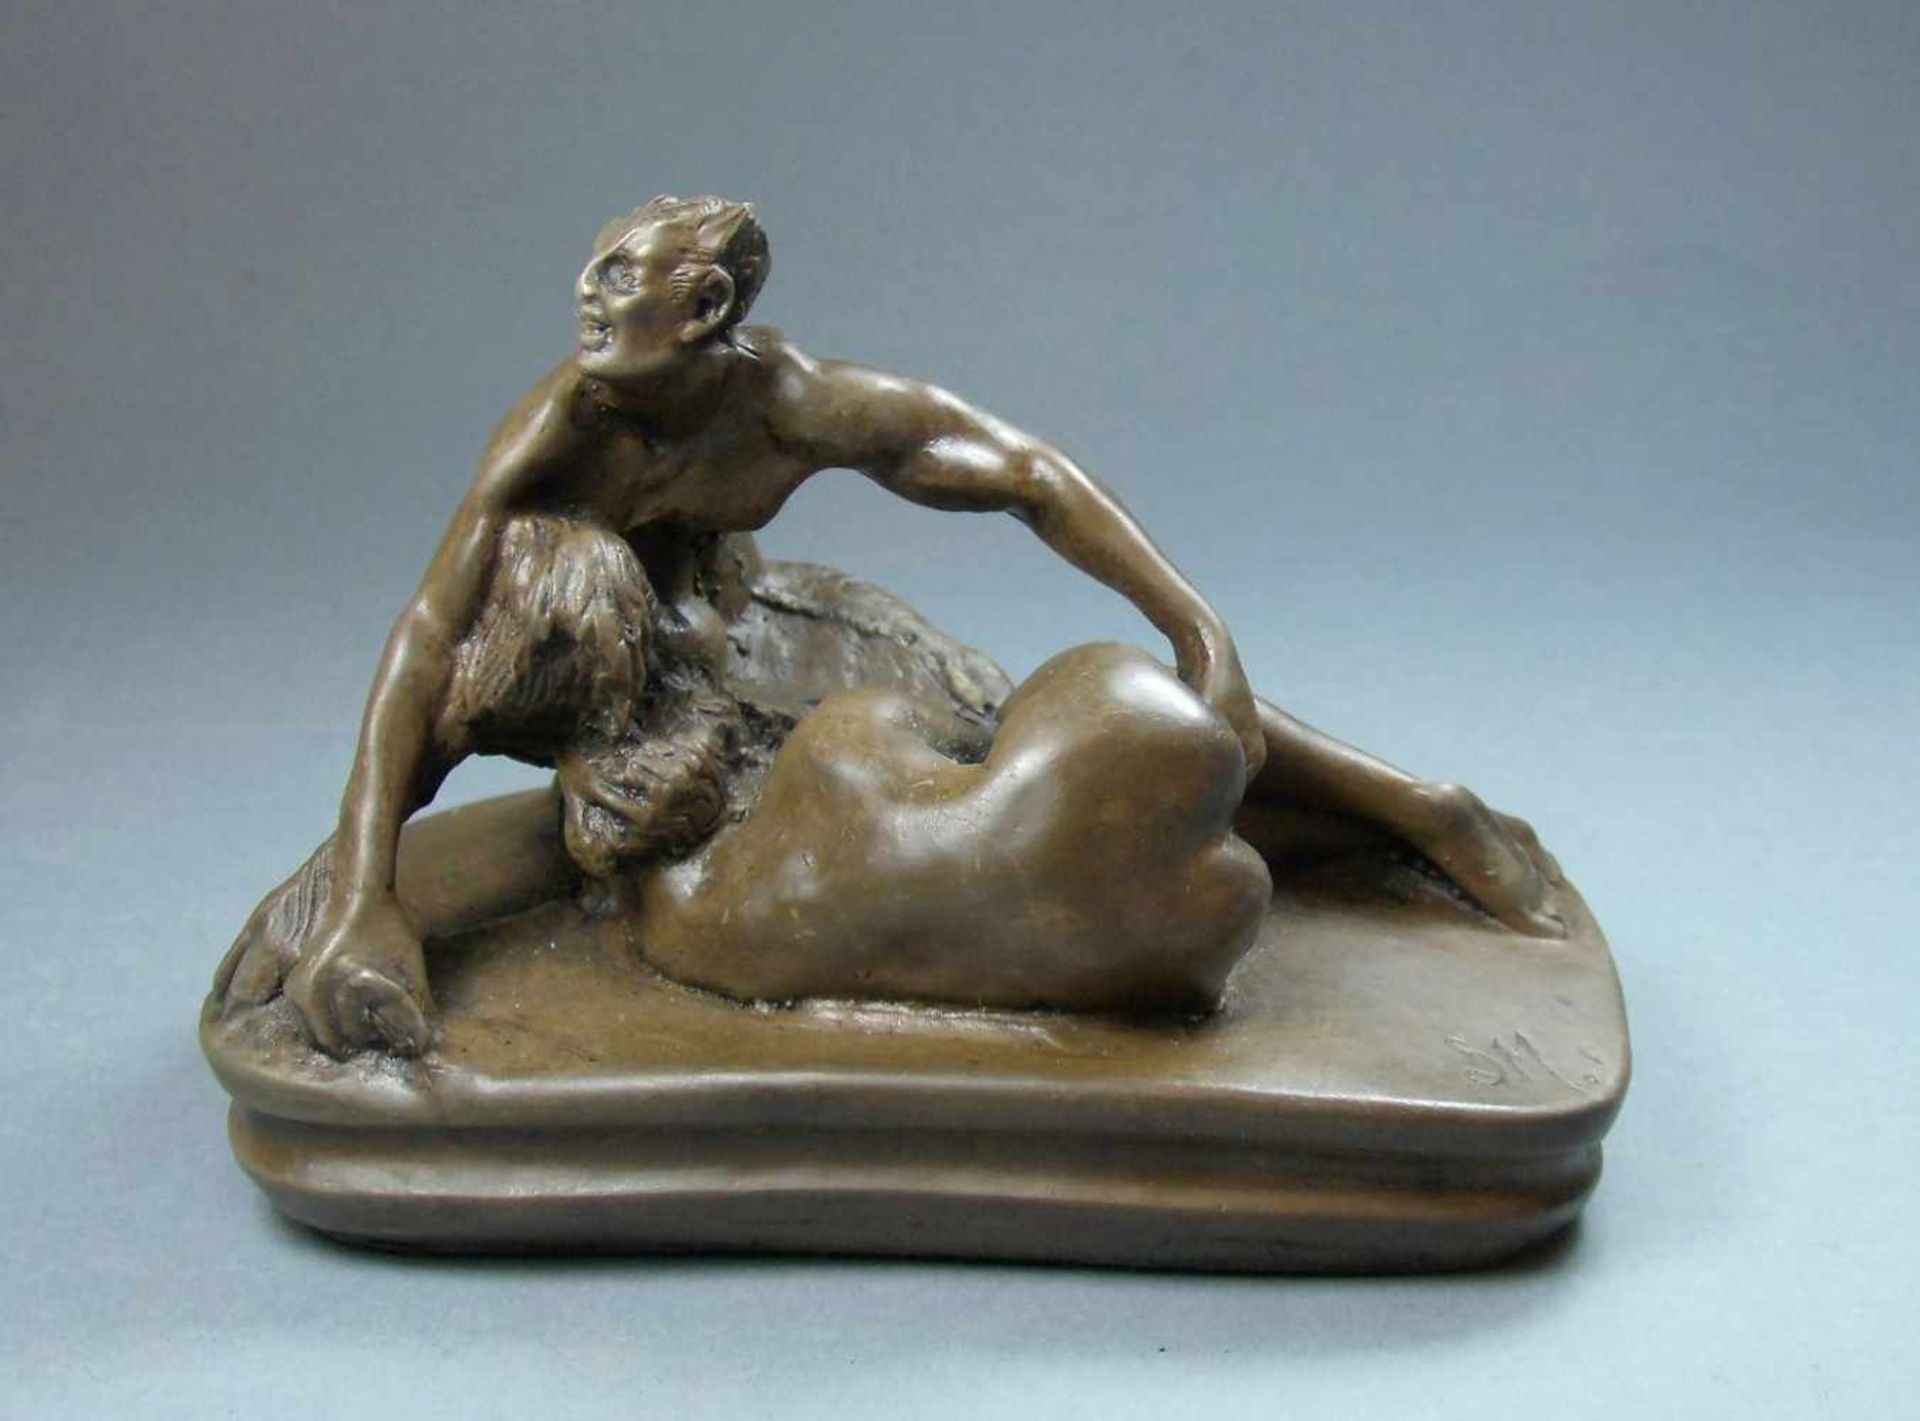 MONOGRAMMIST ("SM" 19./ 20. Jh.), erotische Skulptur / sculpture: "Faun beim Liebesspiel", braun